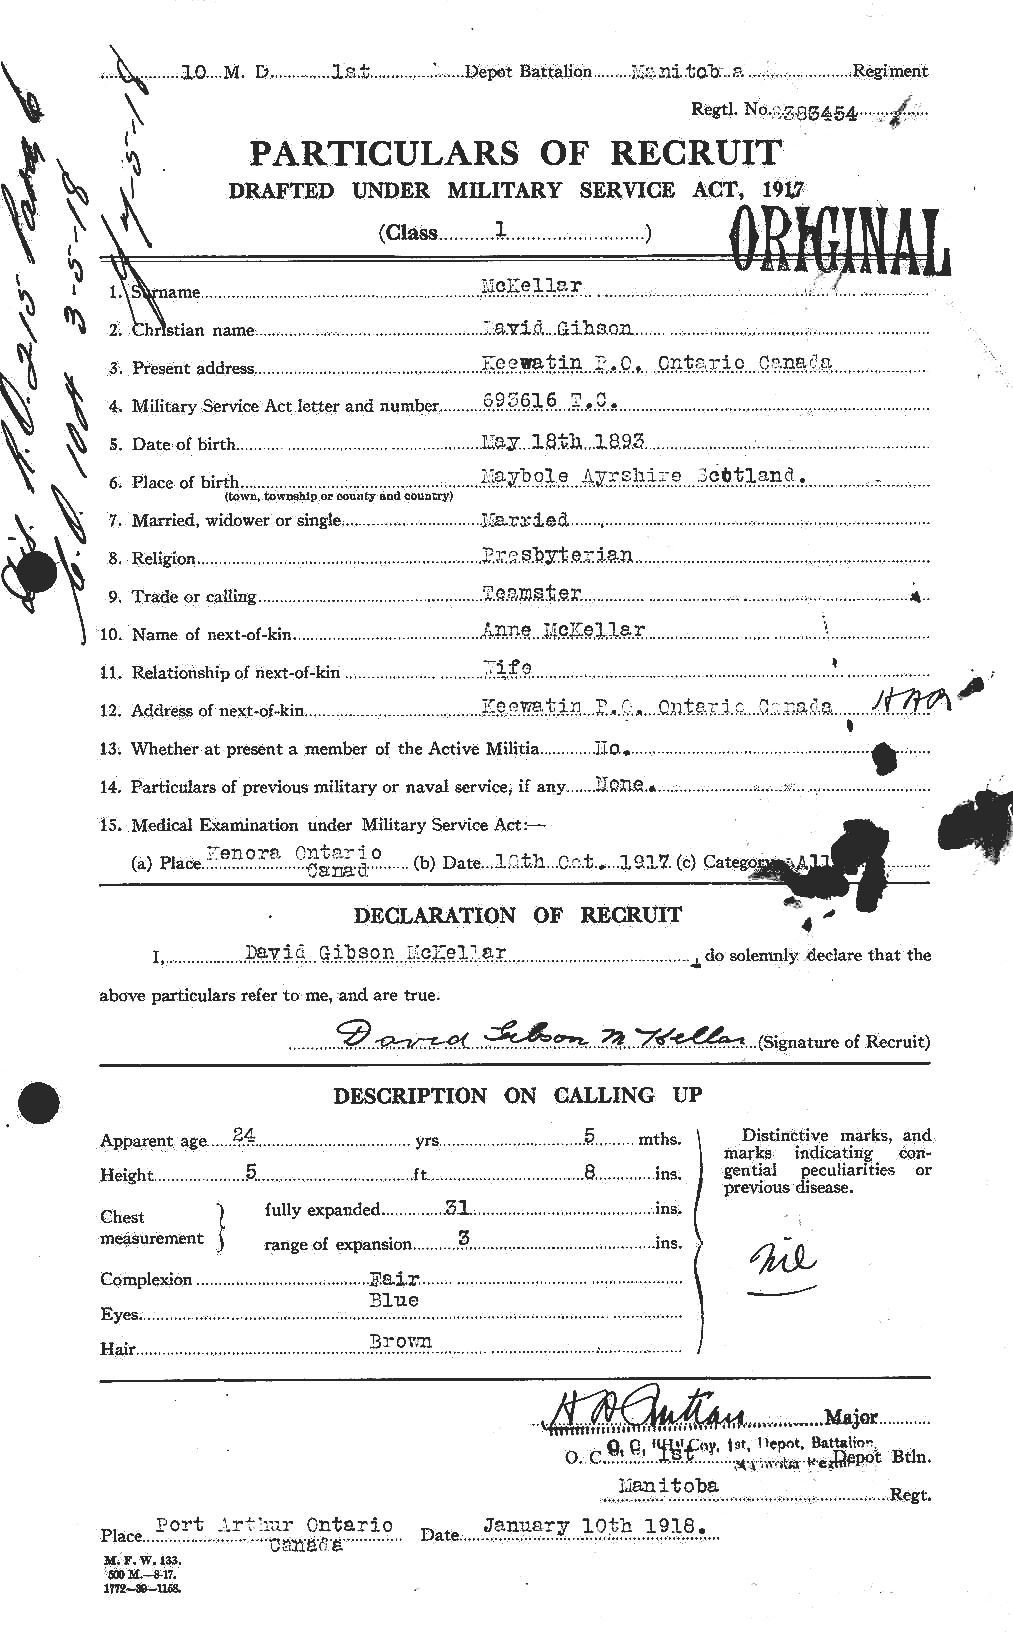 Dossiers du Personnel de la Première Guerre mondiale - CEC 535882a